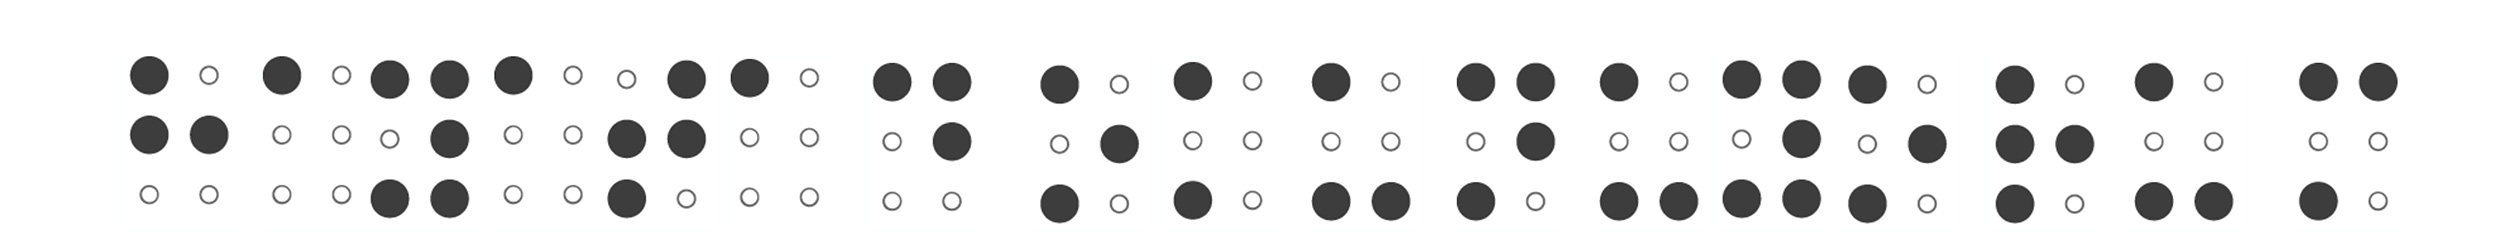 Hayata Dokunuyorum Braille alfabesi ile yazılımı